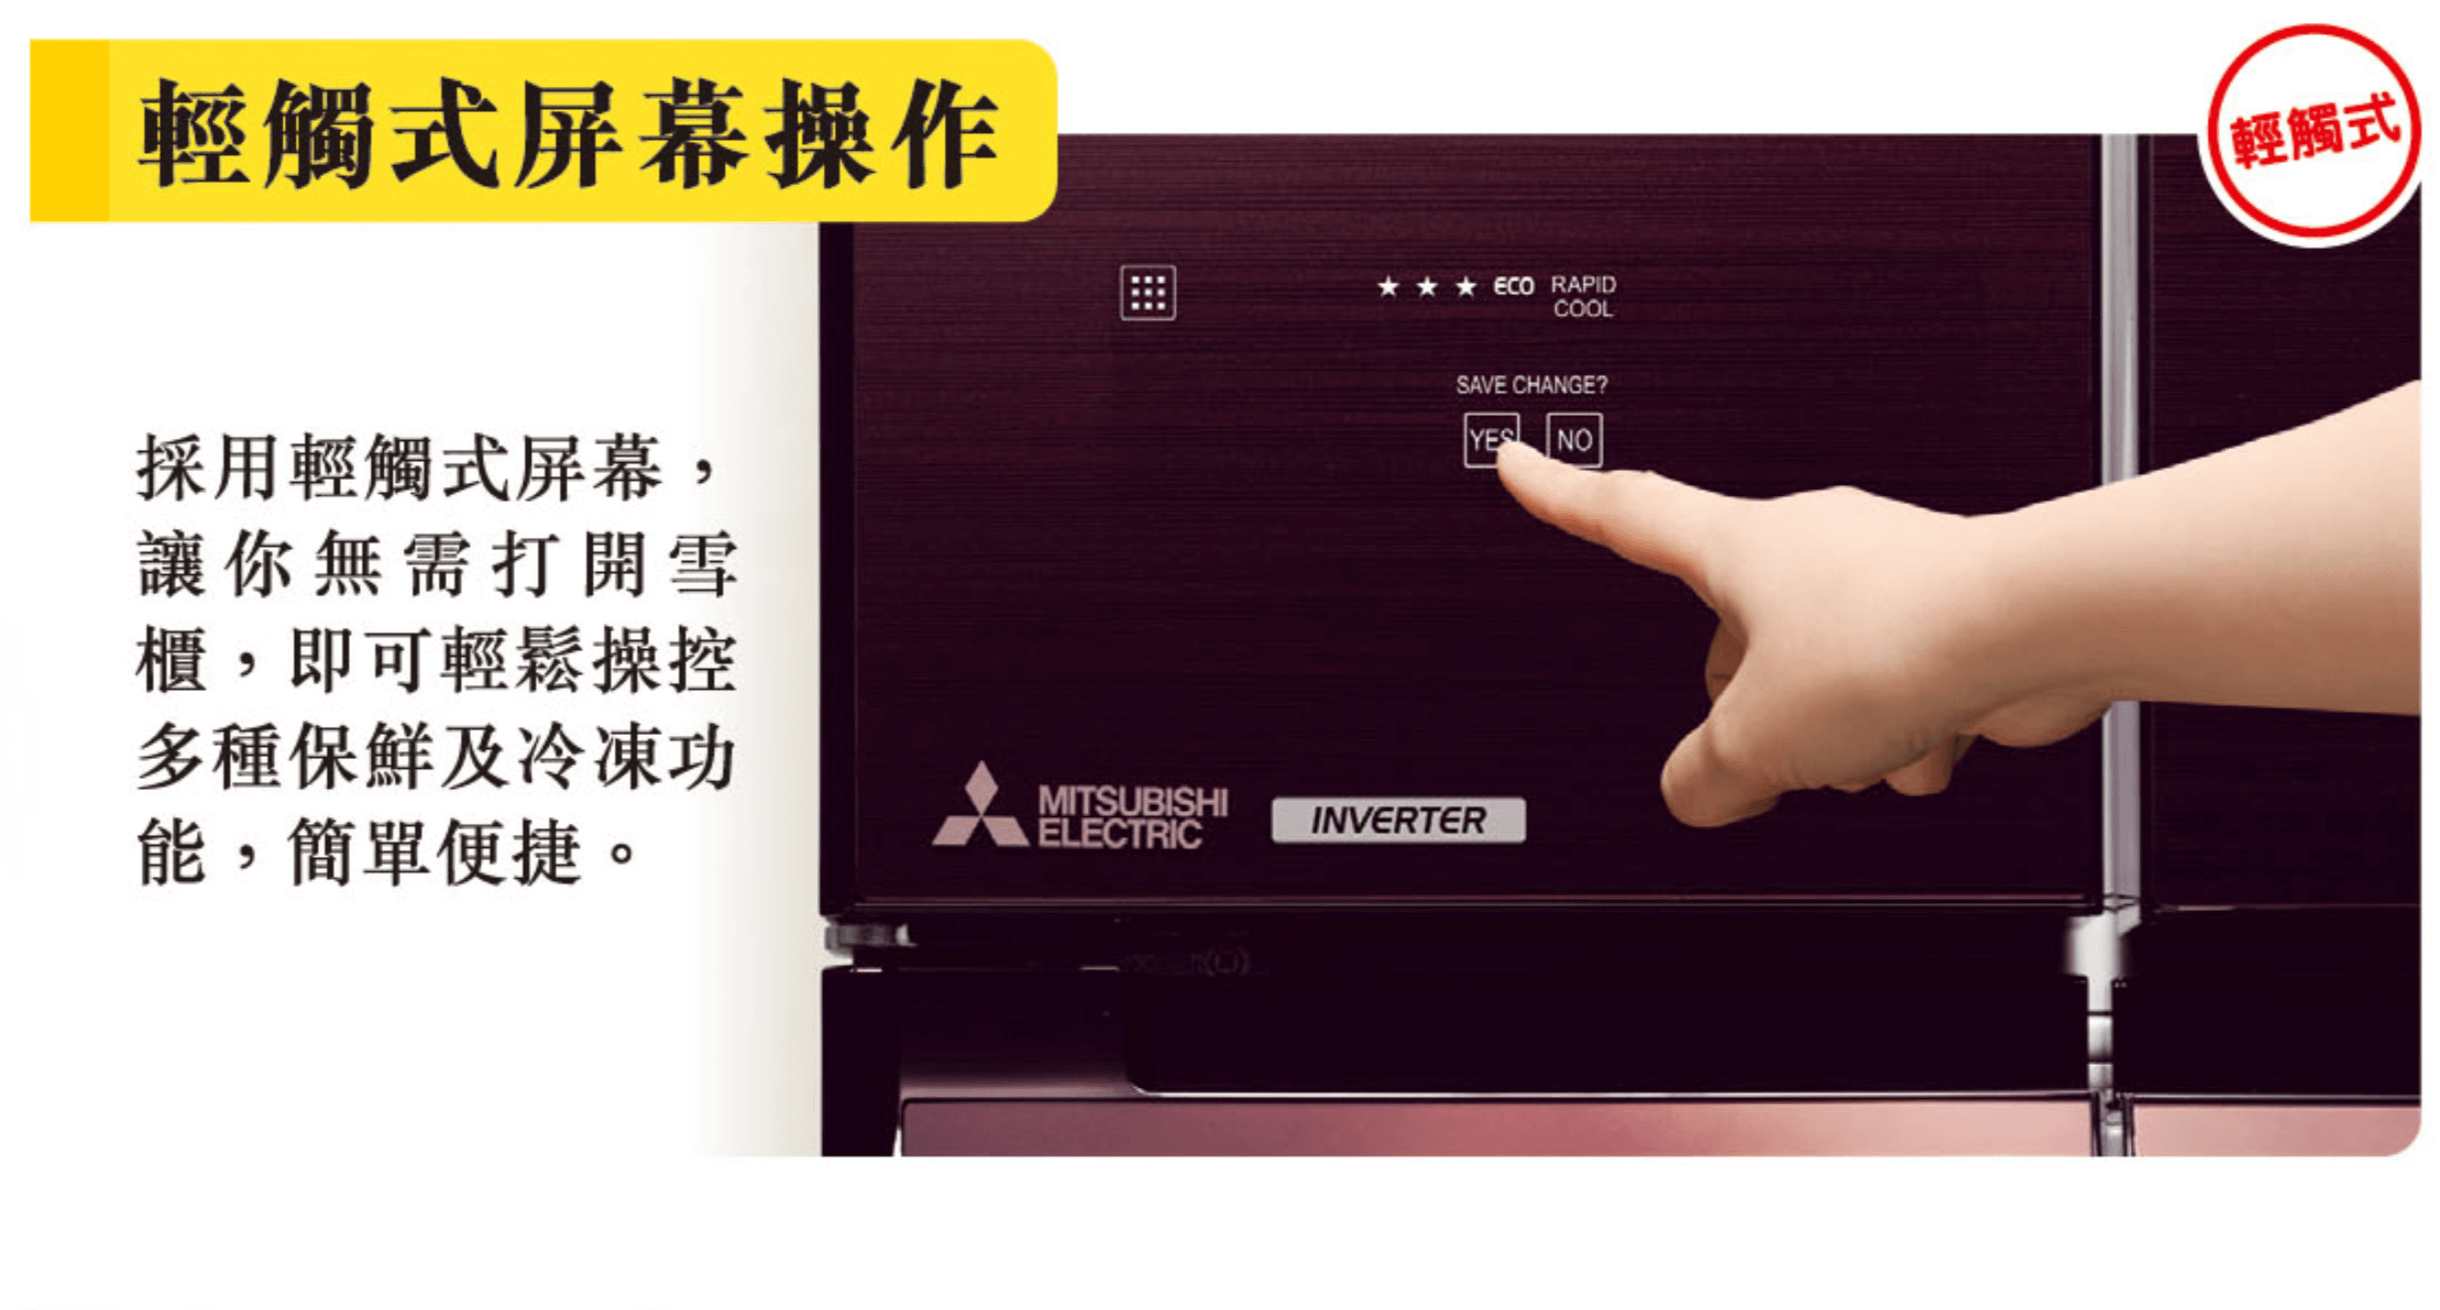 Mitsubishi 三菱 MR-WX70C-F 576公升 六門雪櫃 (亮麗香檳) (需要睇位後方可送貨)